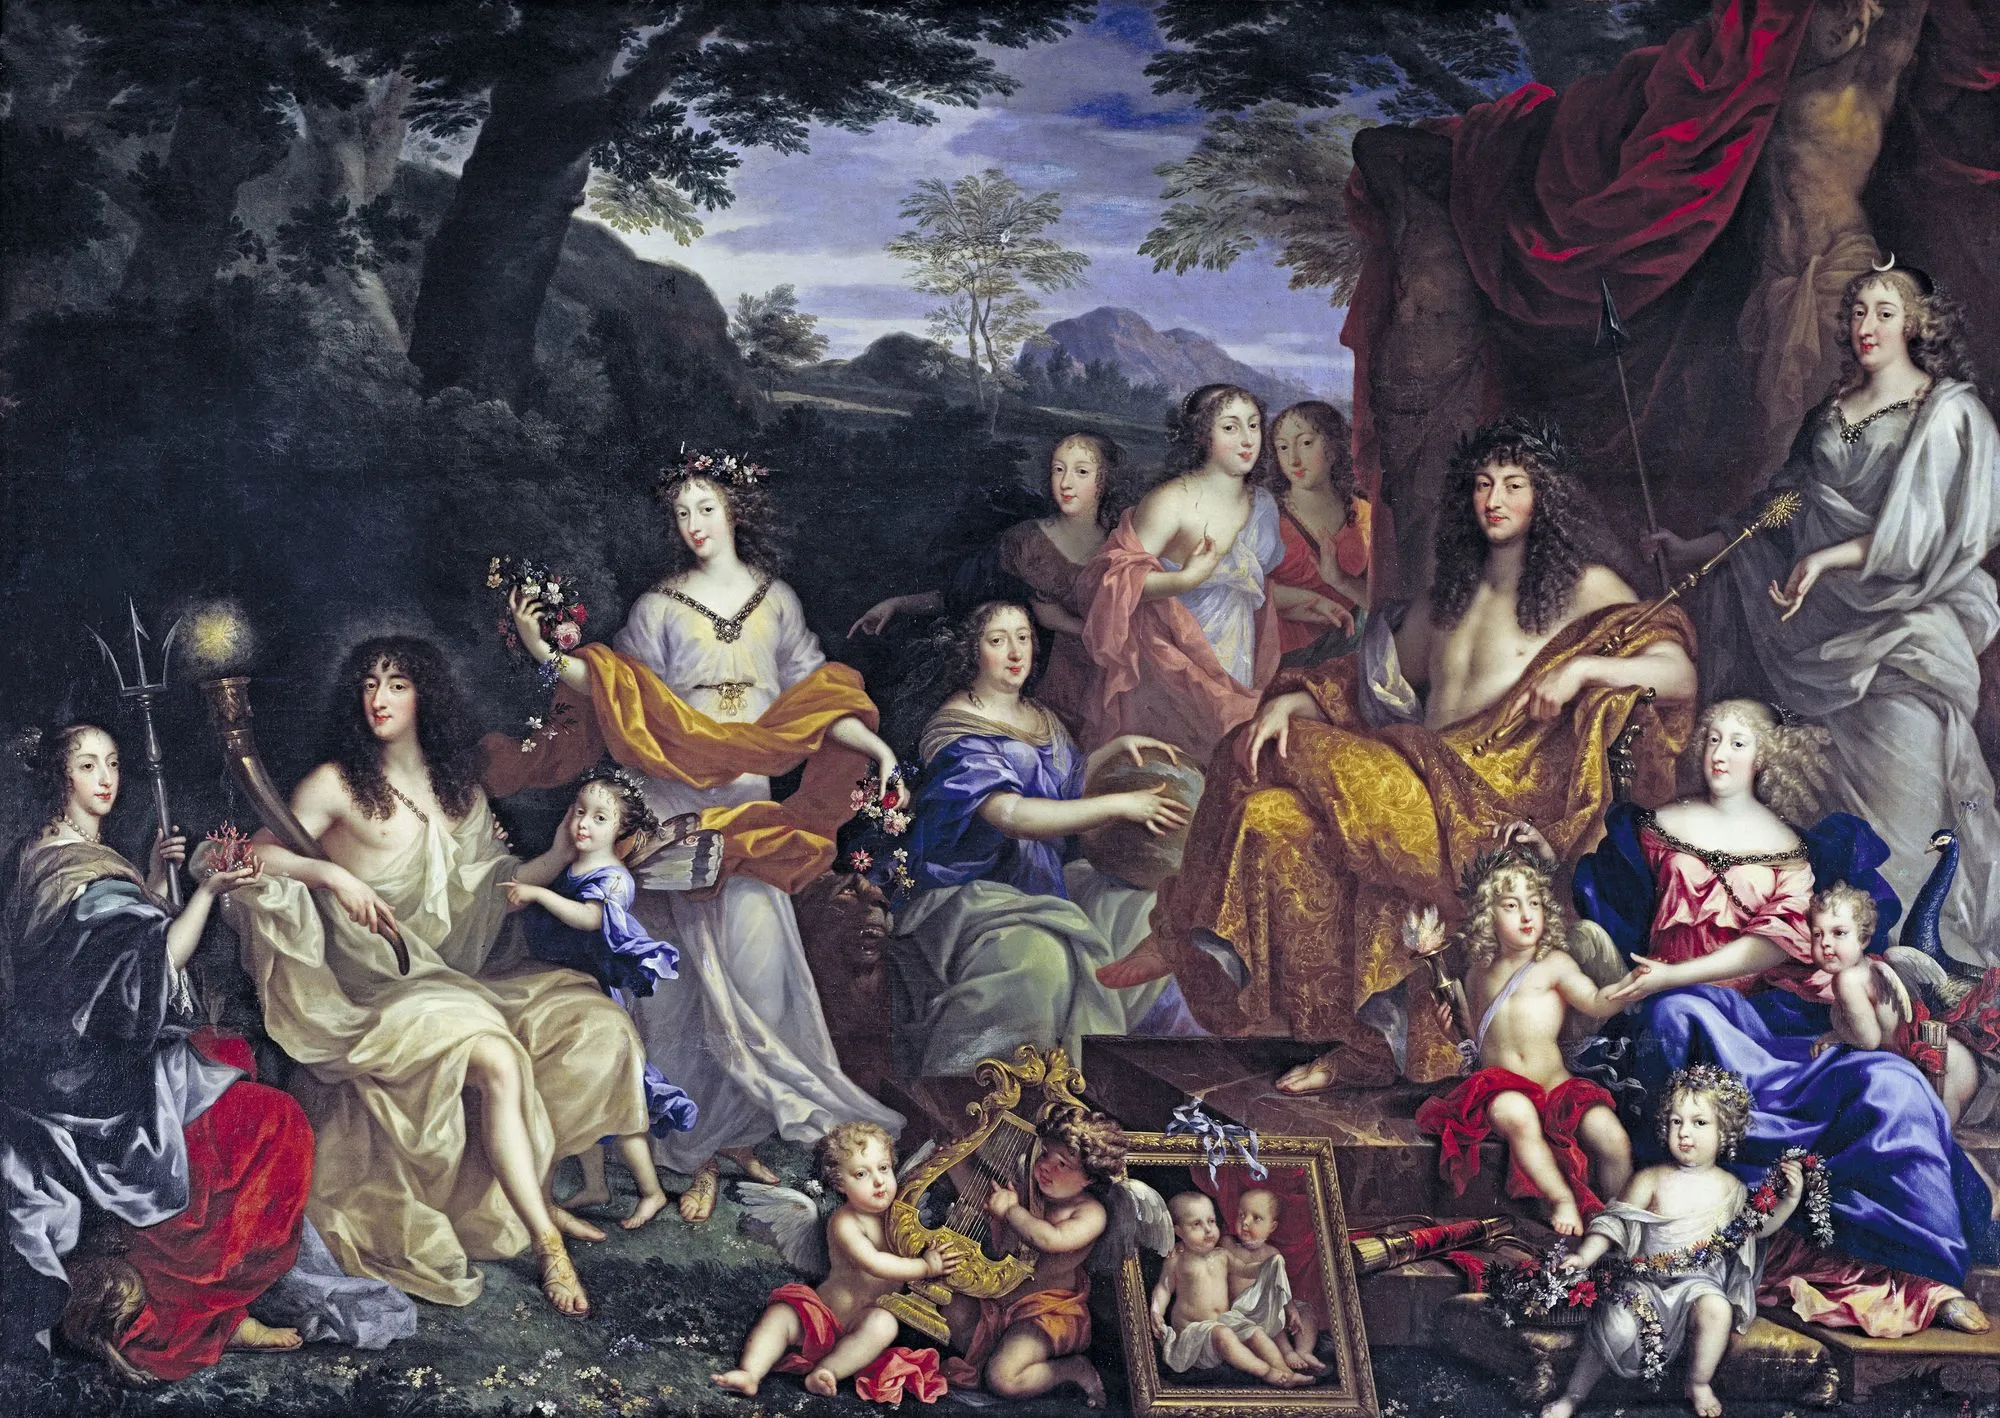 Jean Nocret, Louis‑XIV et la famille royale, 1670, huile sur toile, 305 x 420 cm, château de Versailles